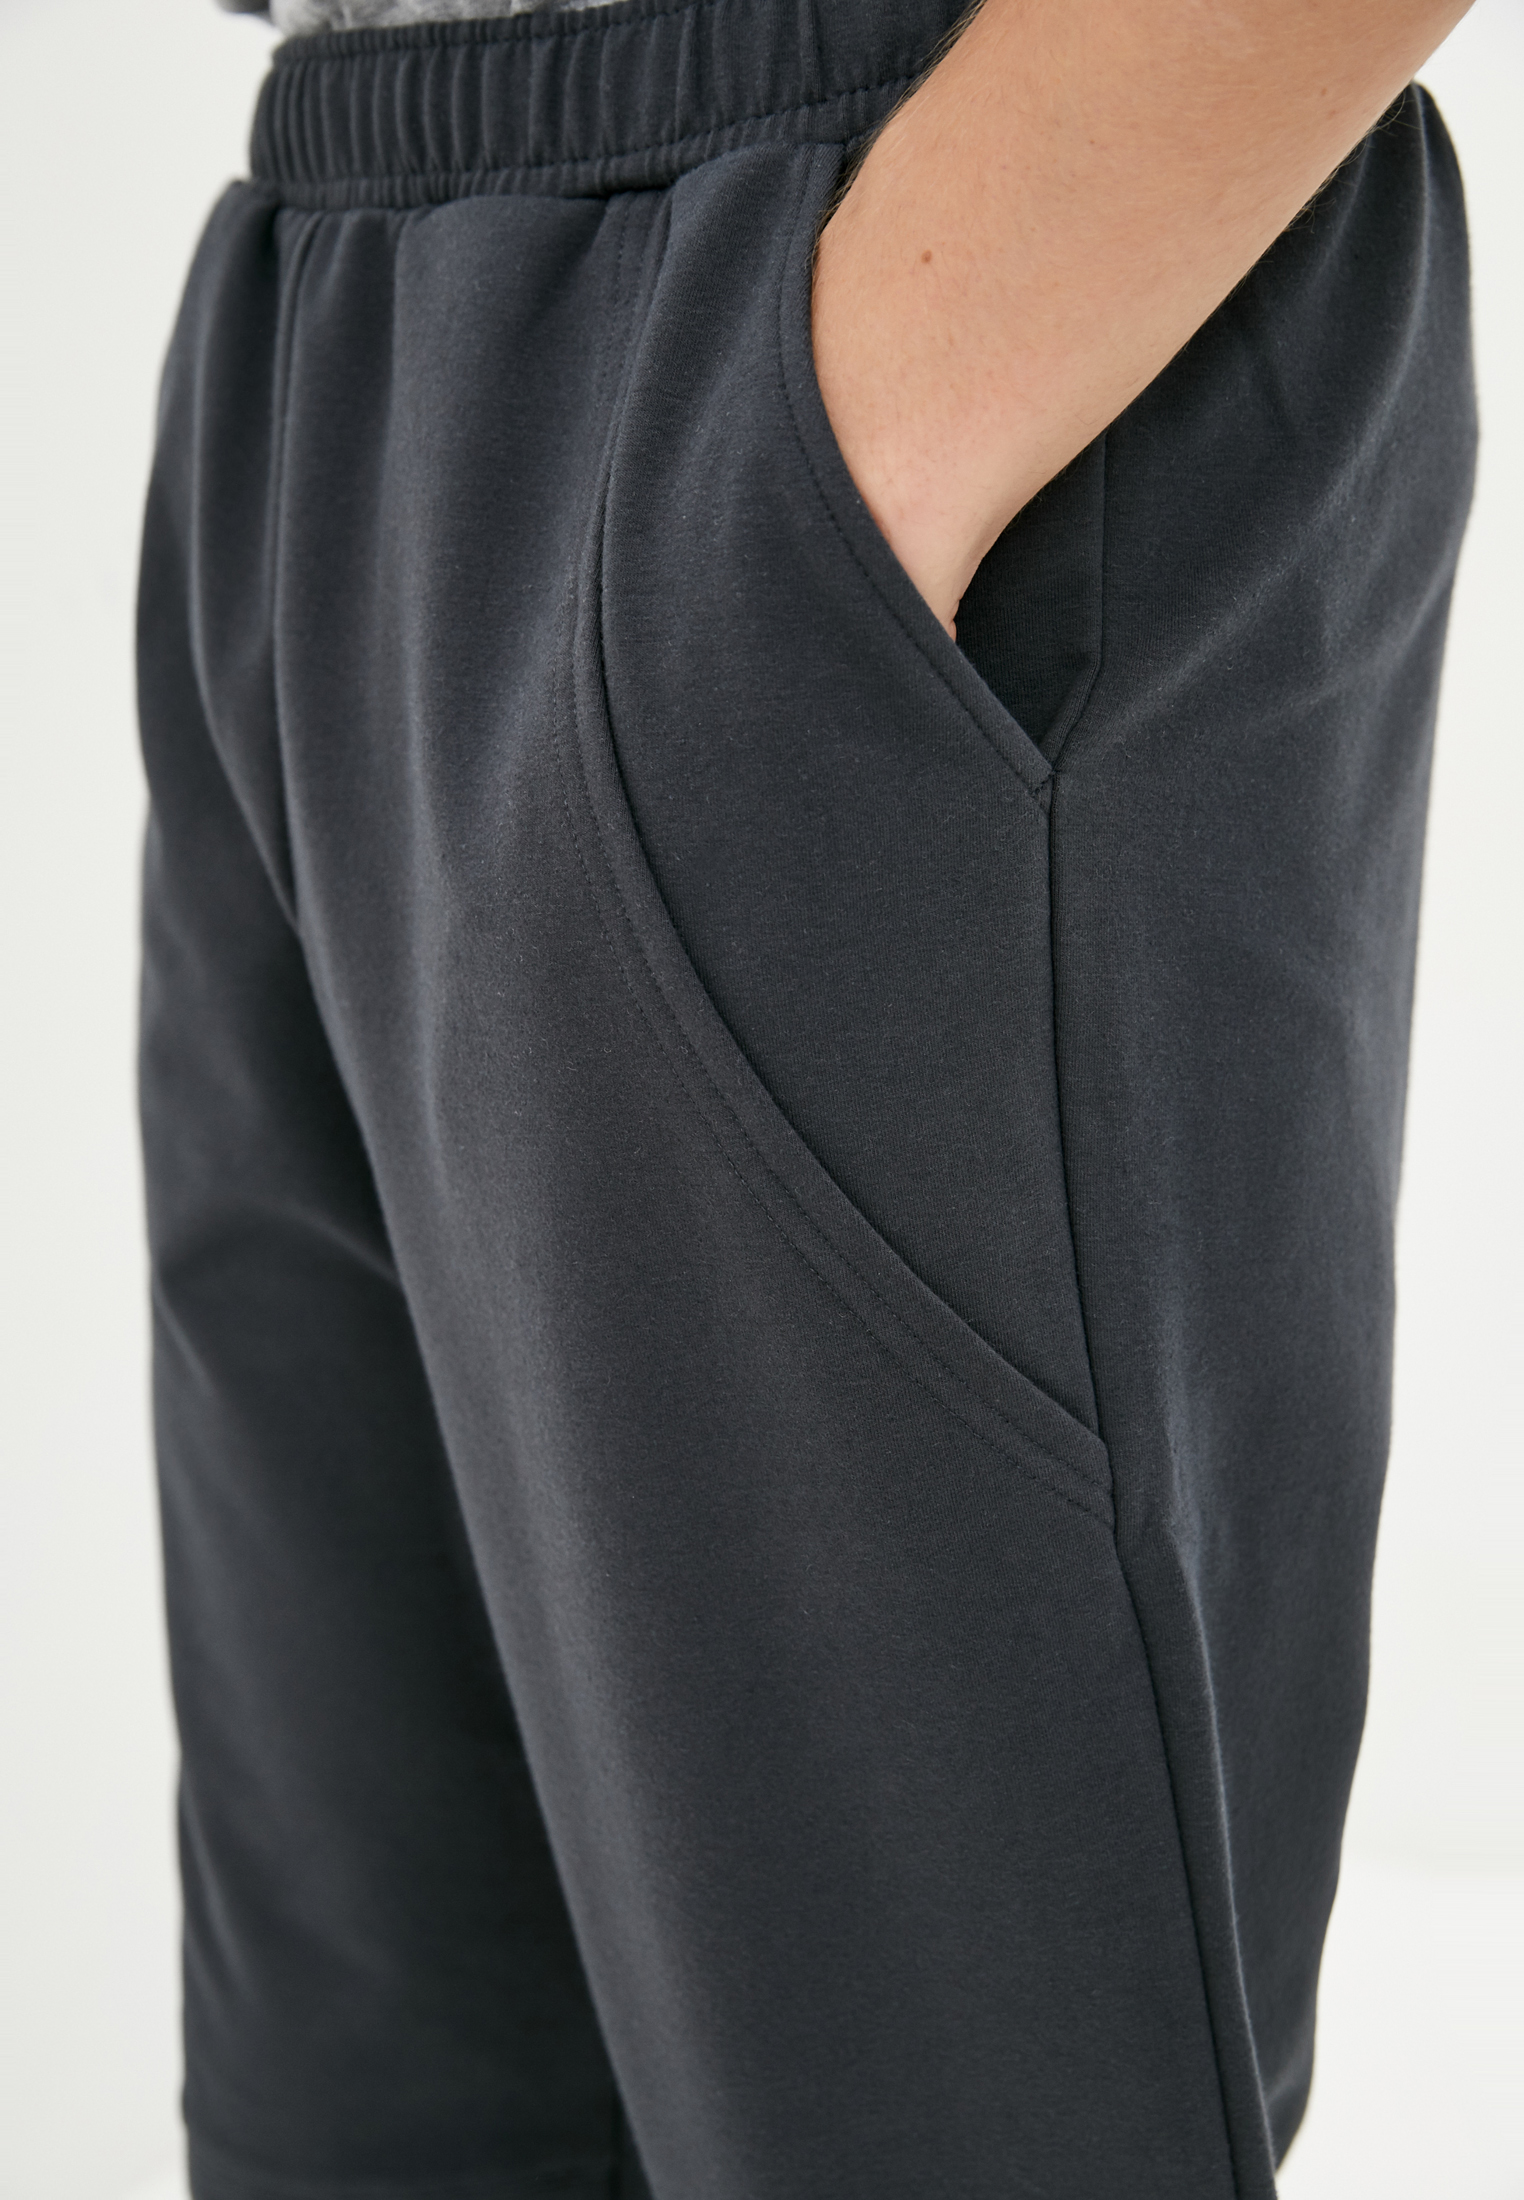 Pants with decorative pockets, vendor code: 1040-02.1, color: Dark grey